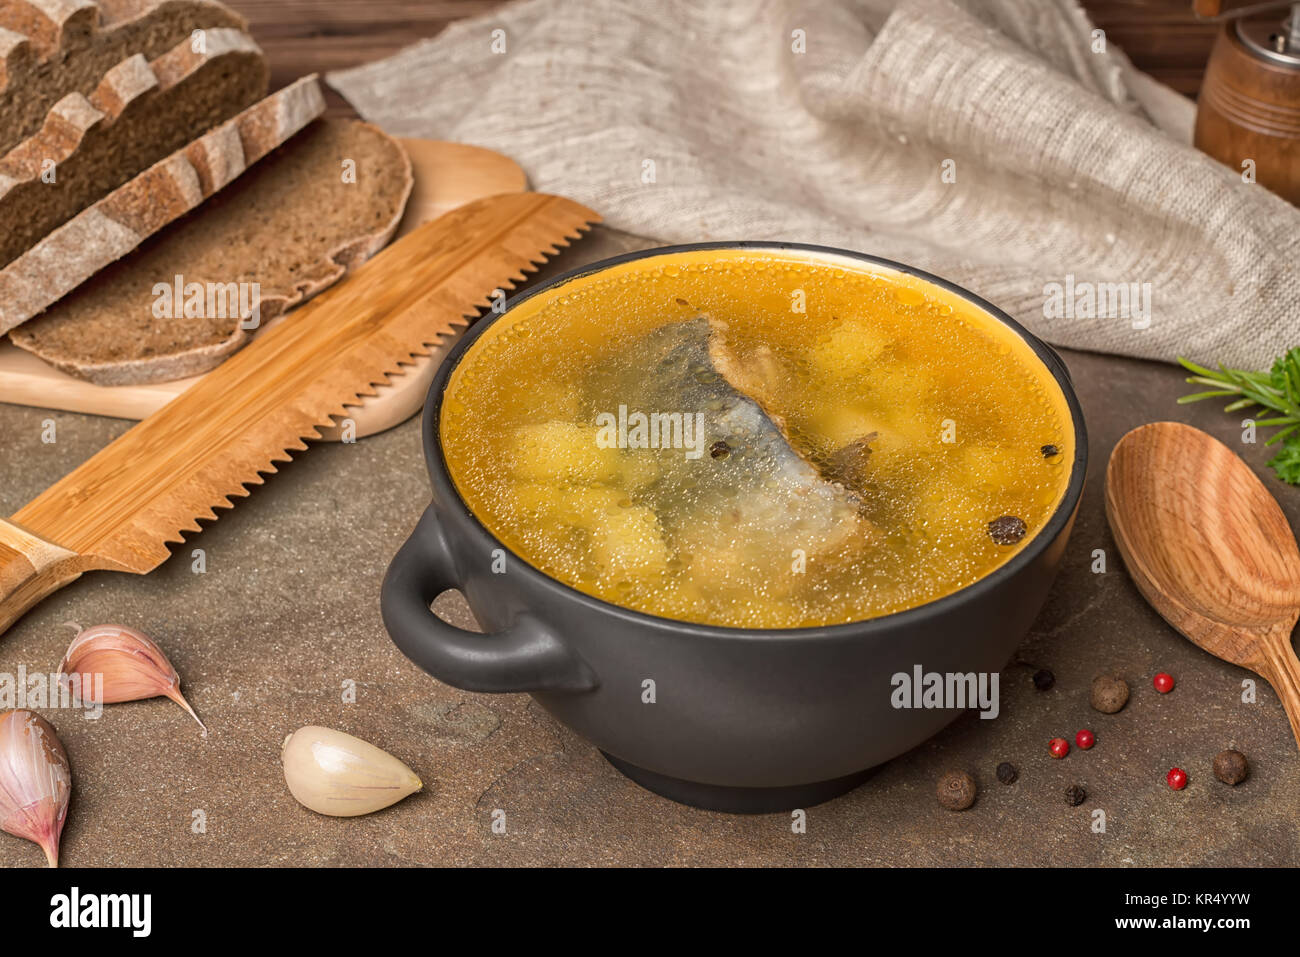 Trasparente la zuppa di pesce con lo storione, patate in piastra nera, decorato l'aglio, il cucchiaio di legno e tagliate il pane di segale, mangiare sano Foto Stock